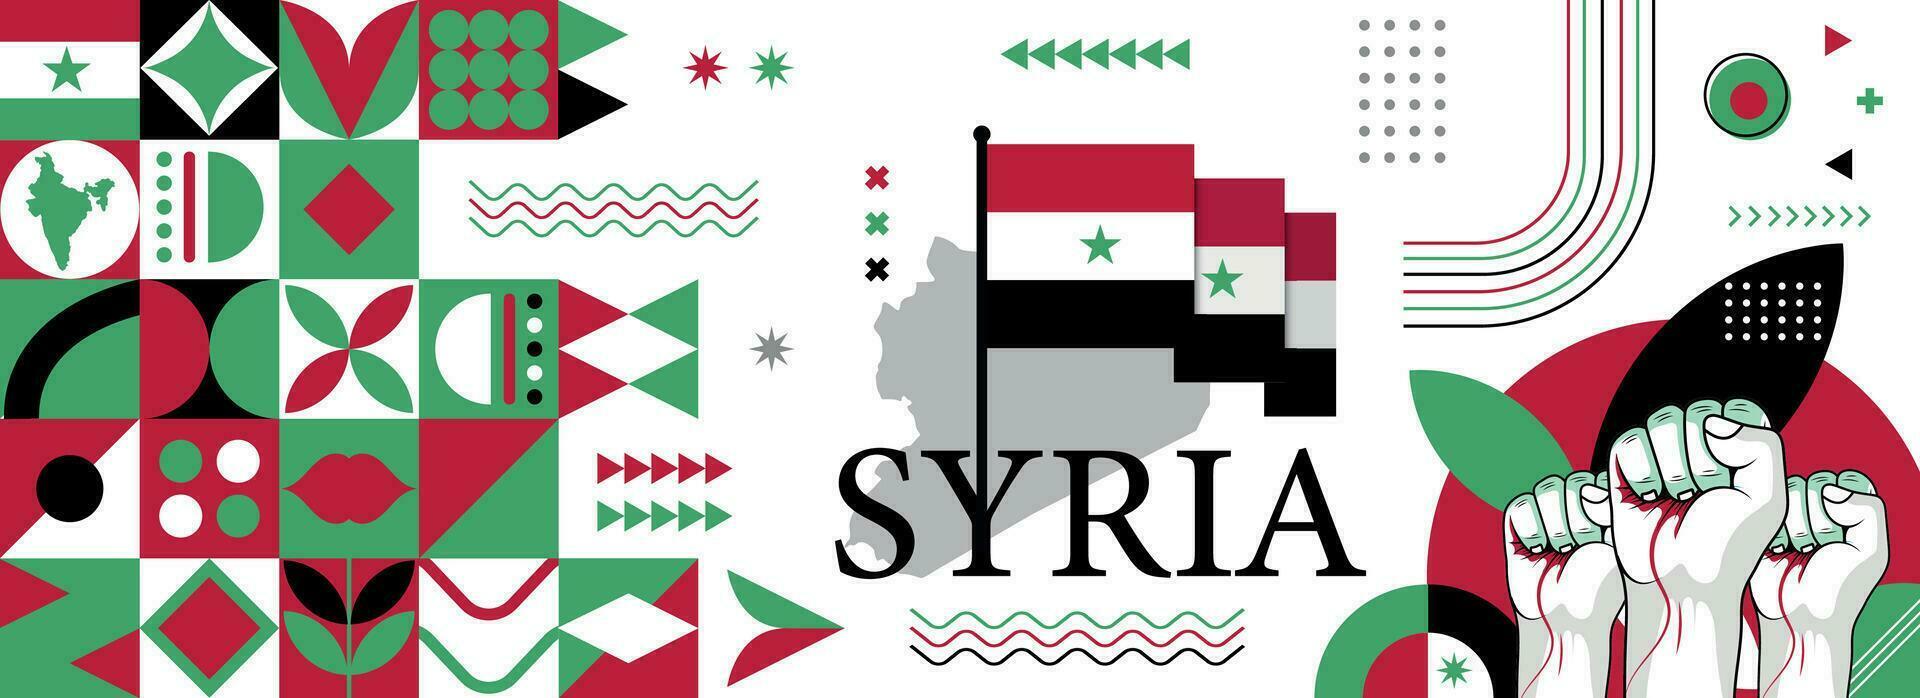 Syrie nationale ou indépendance journée bannière pour syrien fête. drapeau et carte de sirya avec élevé poings. moderne rétro conception avec typorgaphie abstrait géométrique Icônes. vecteur illustration.